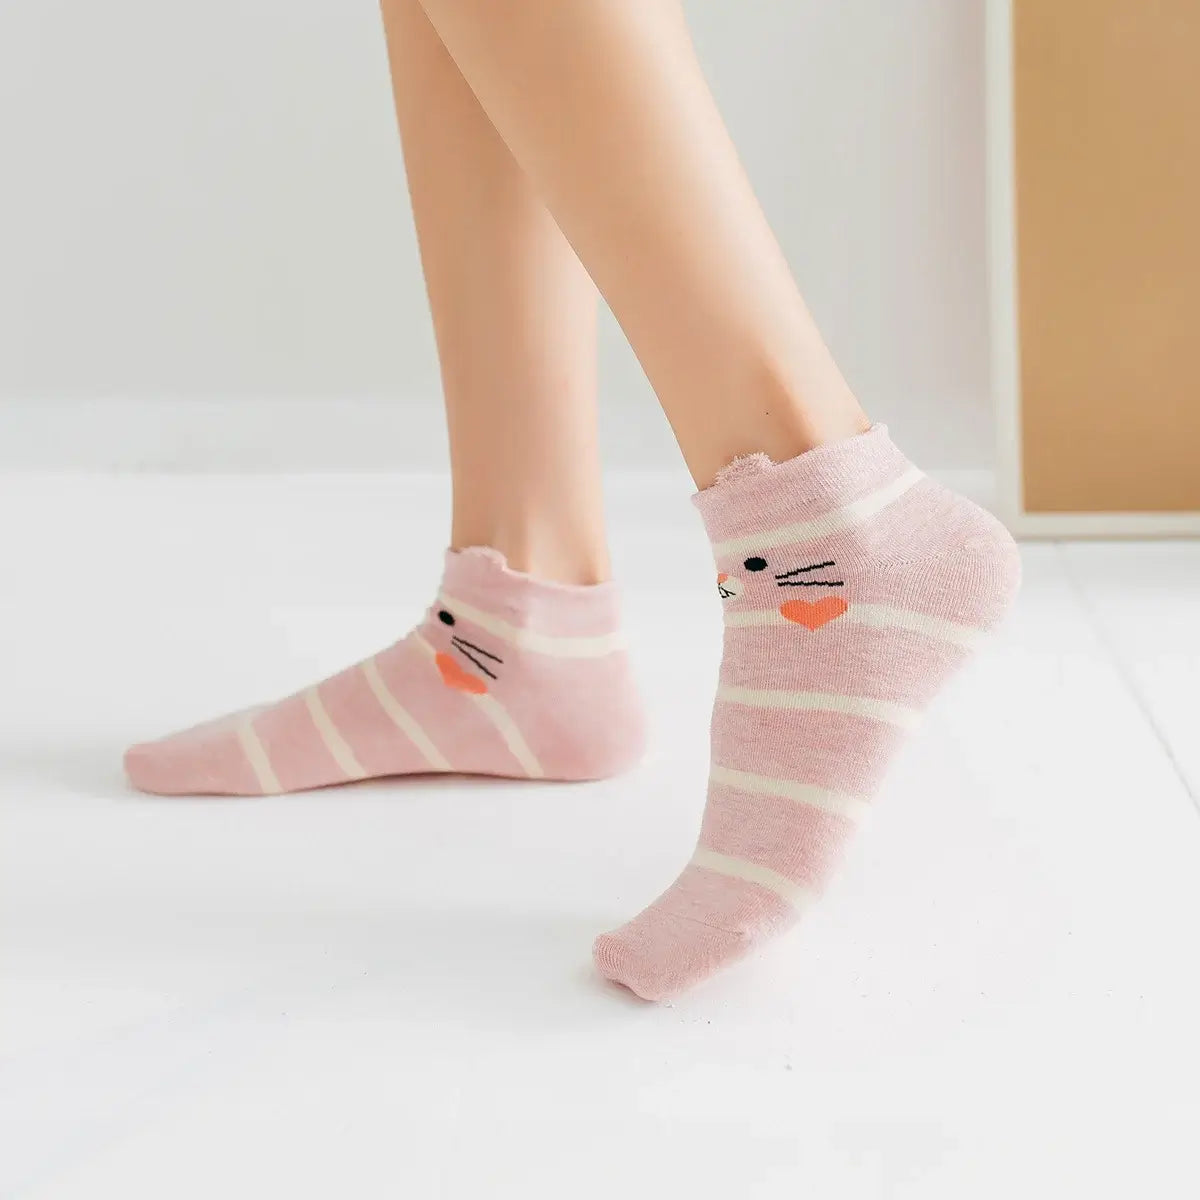 Chaussettes rose longues en coton avec des petites oreilles et représentant un lapin | Chaussettes confortables et élégantes | Idéales pour tous | Disponibles en plusieurs couleurs